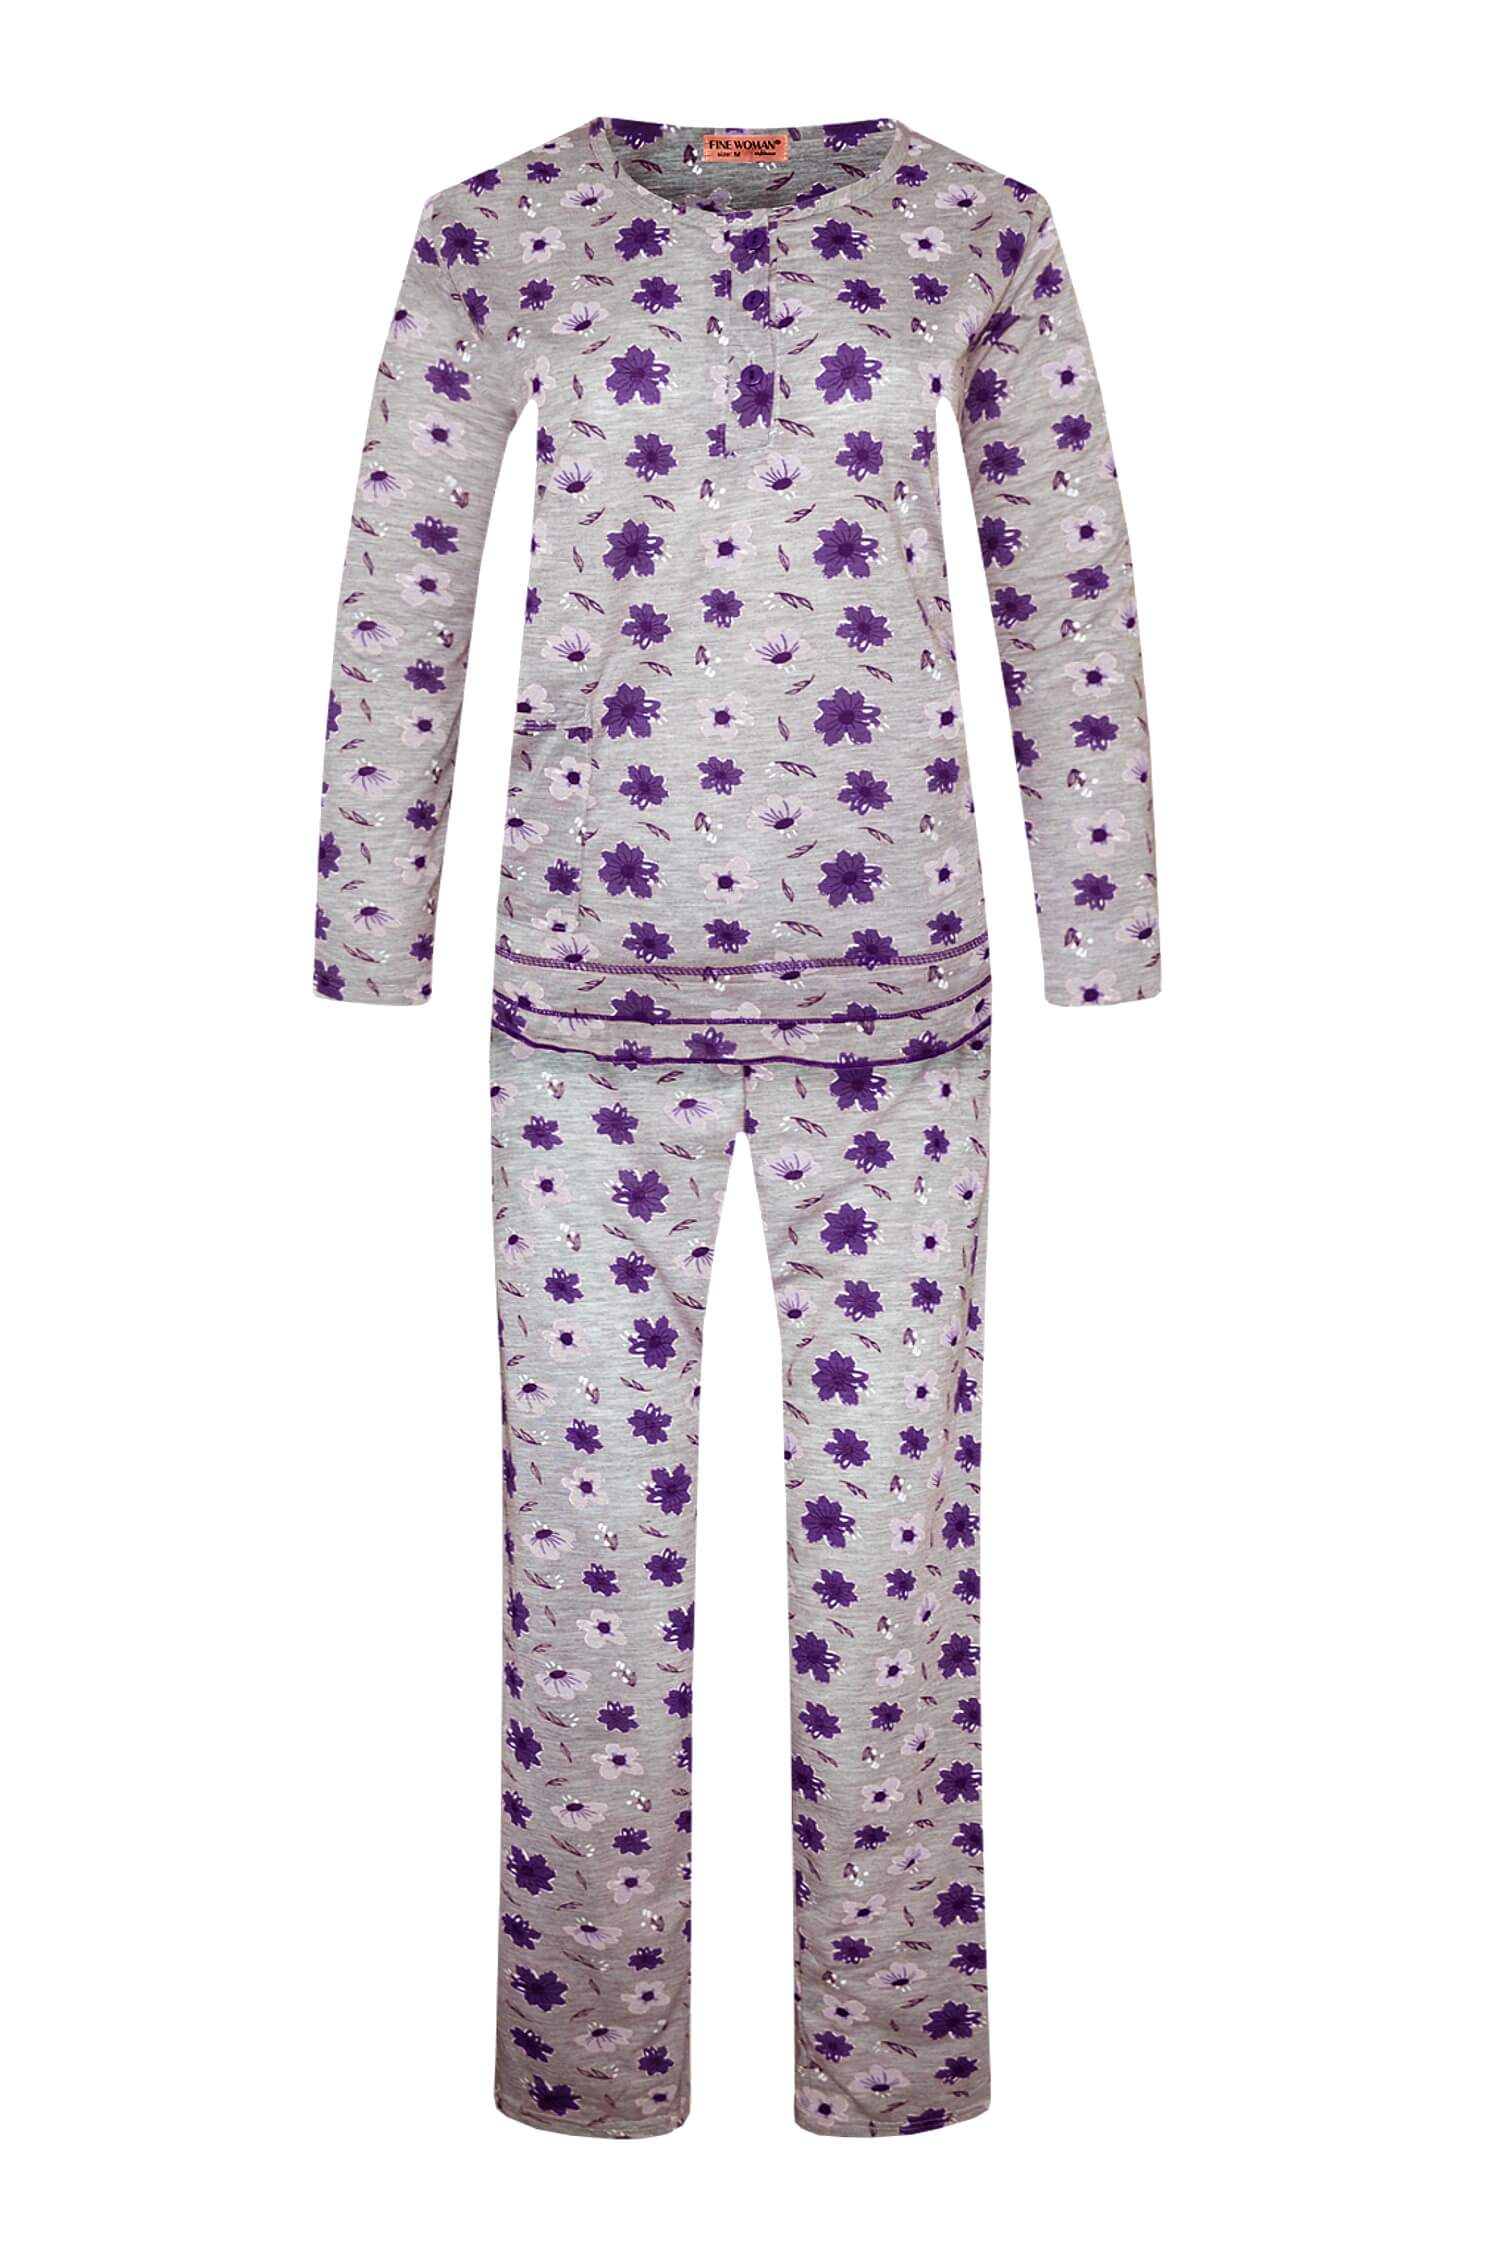 Arenda dámské dlouhé pyžamo 2297 M fialová